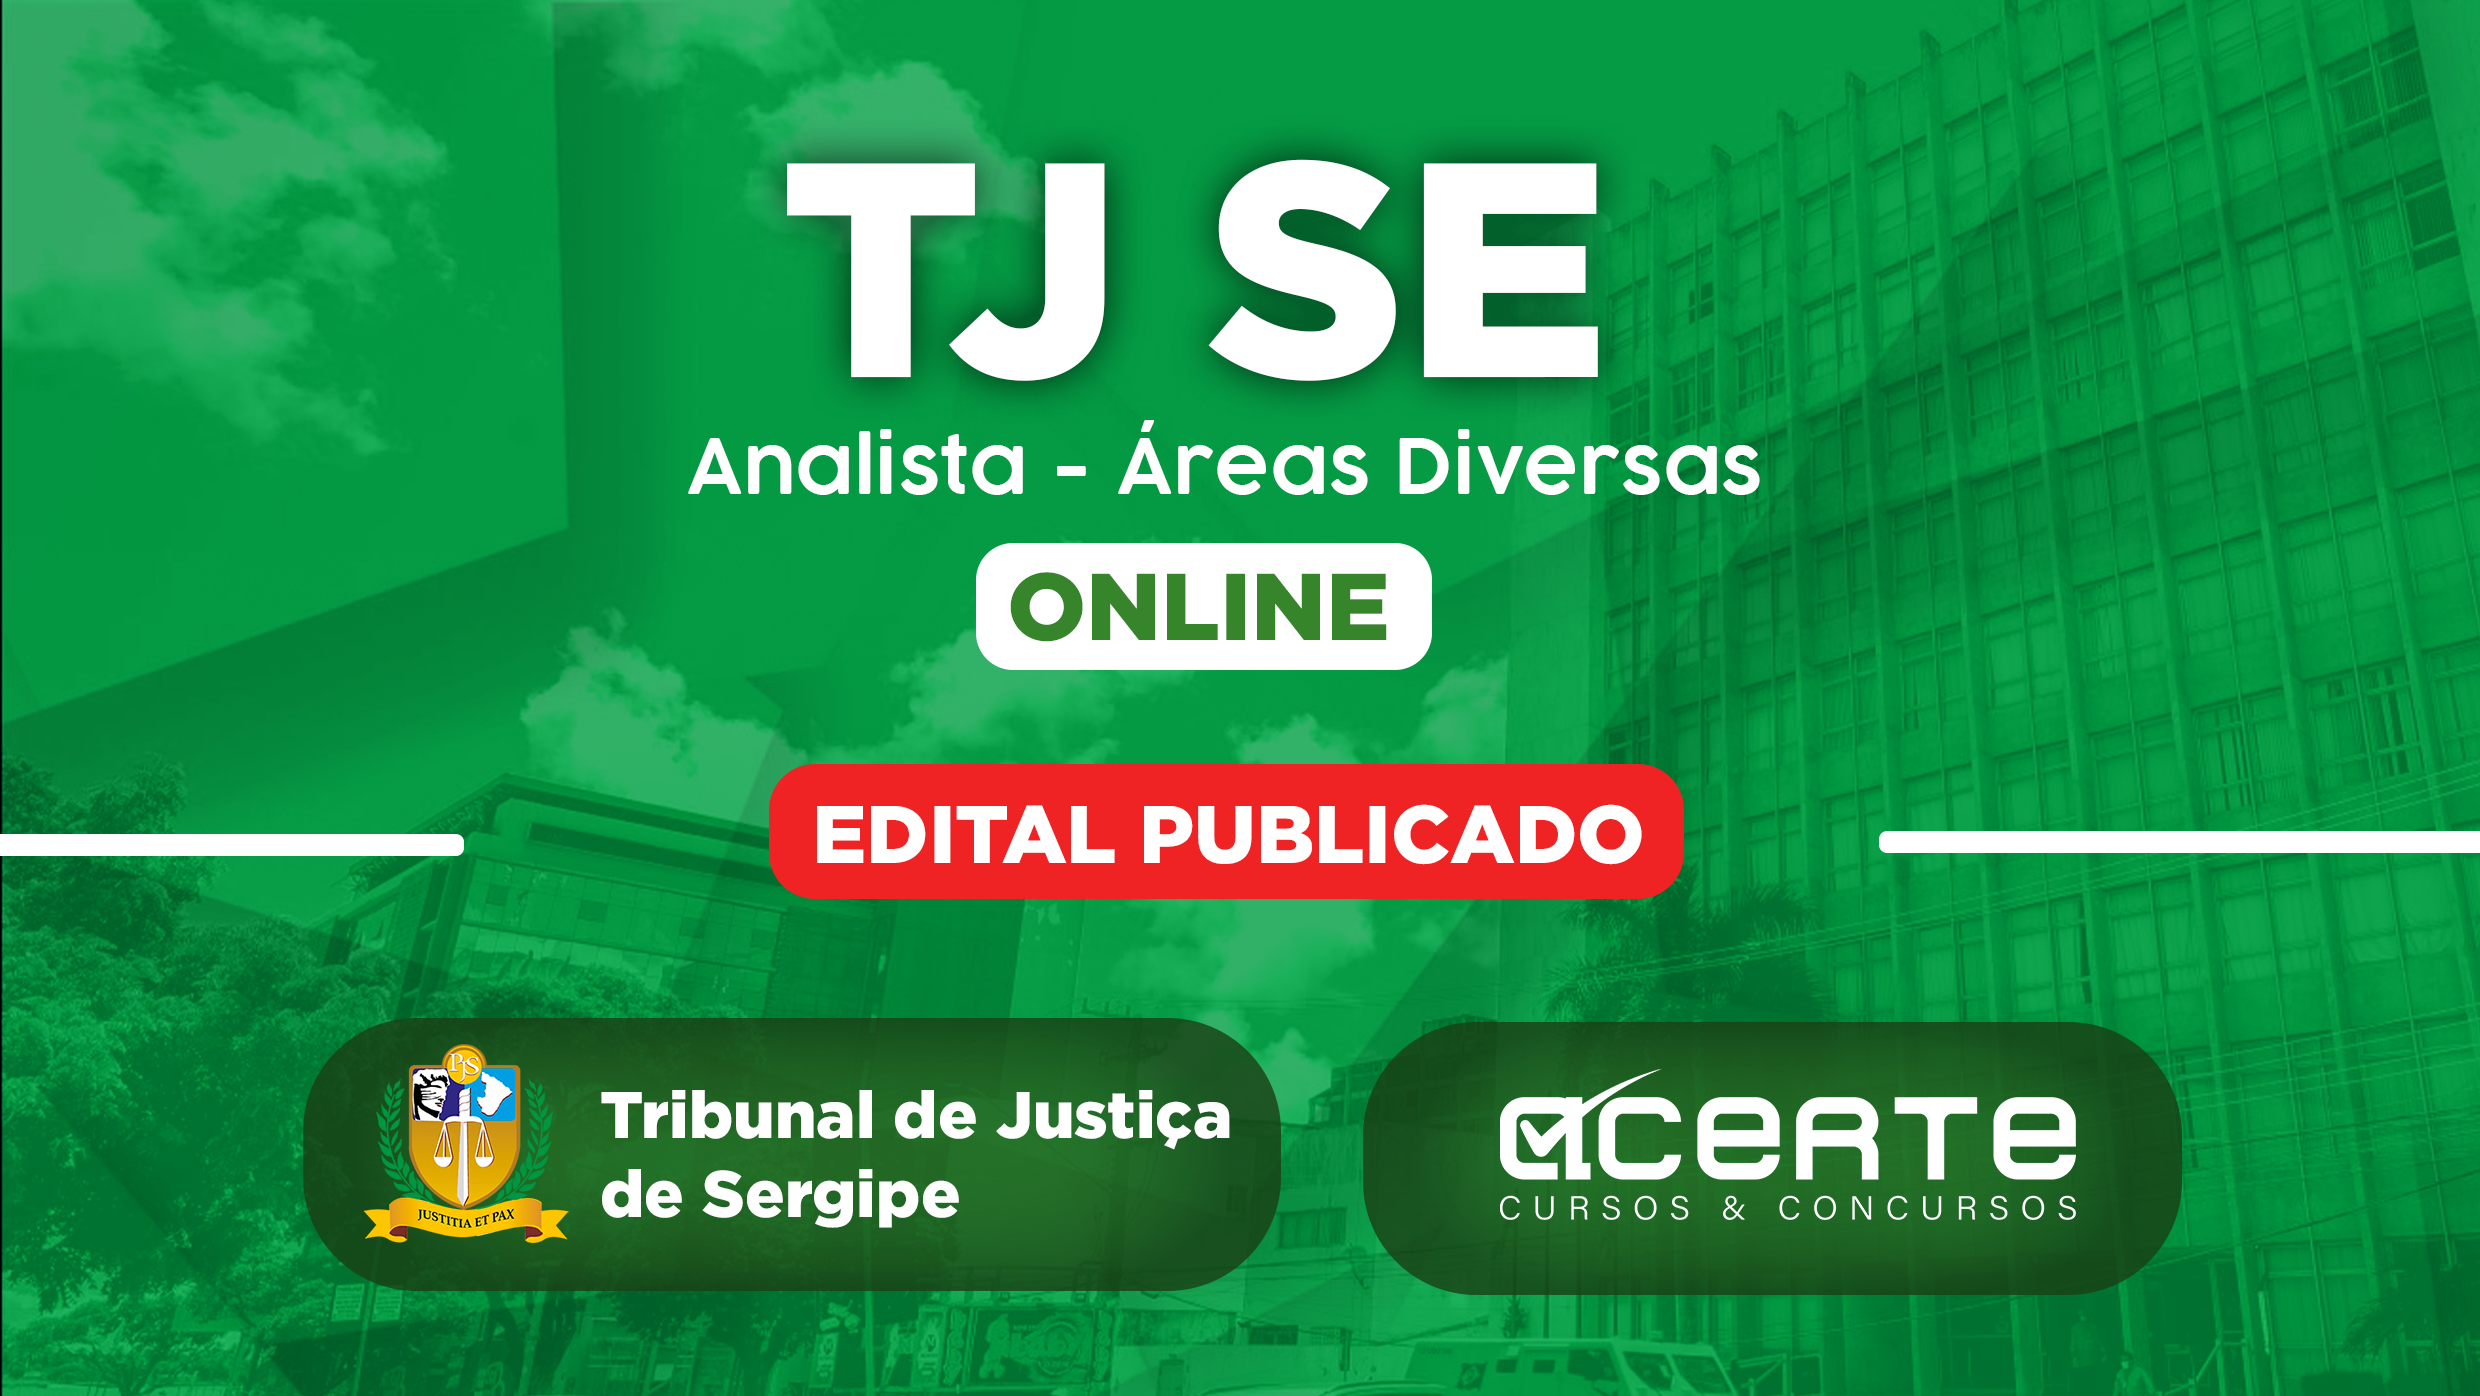 TJ SE - Analista - Áreas Diversas - Online - Edital Publicado